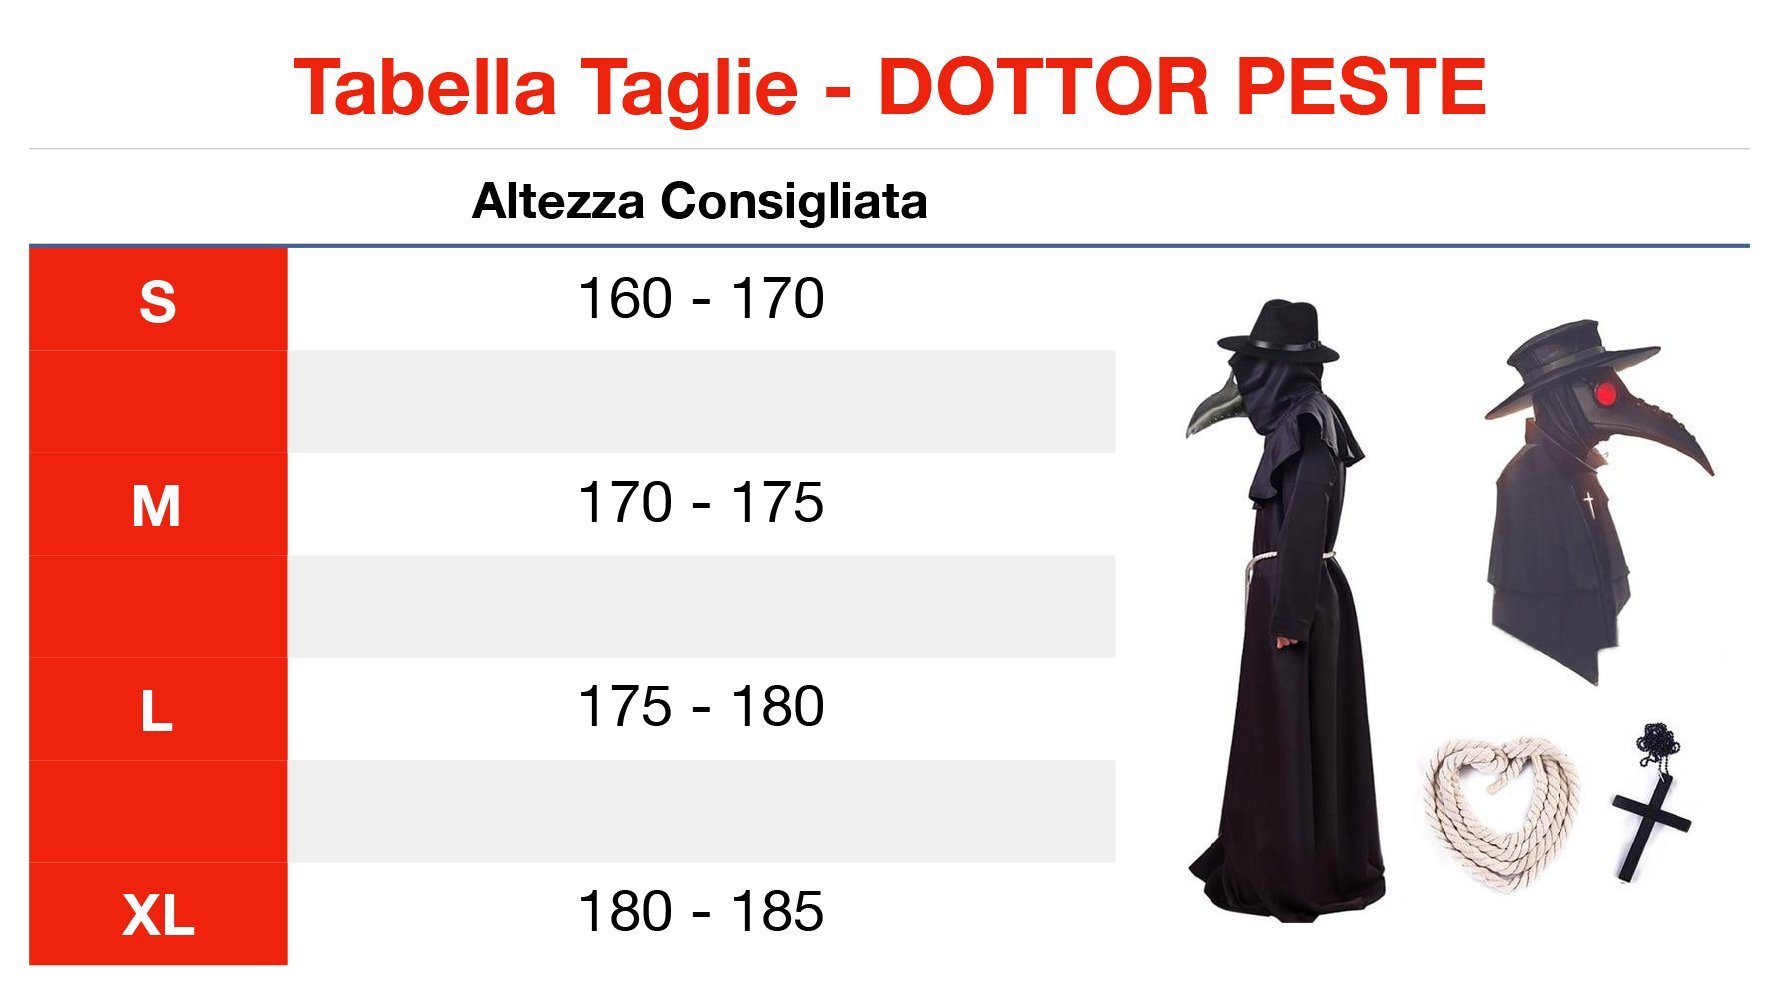 Dottor Peste costume - Edaica